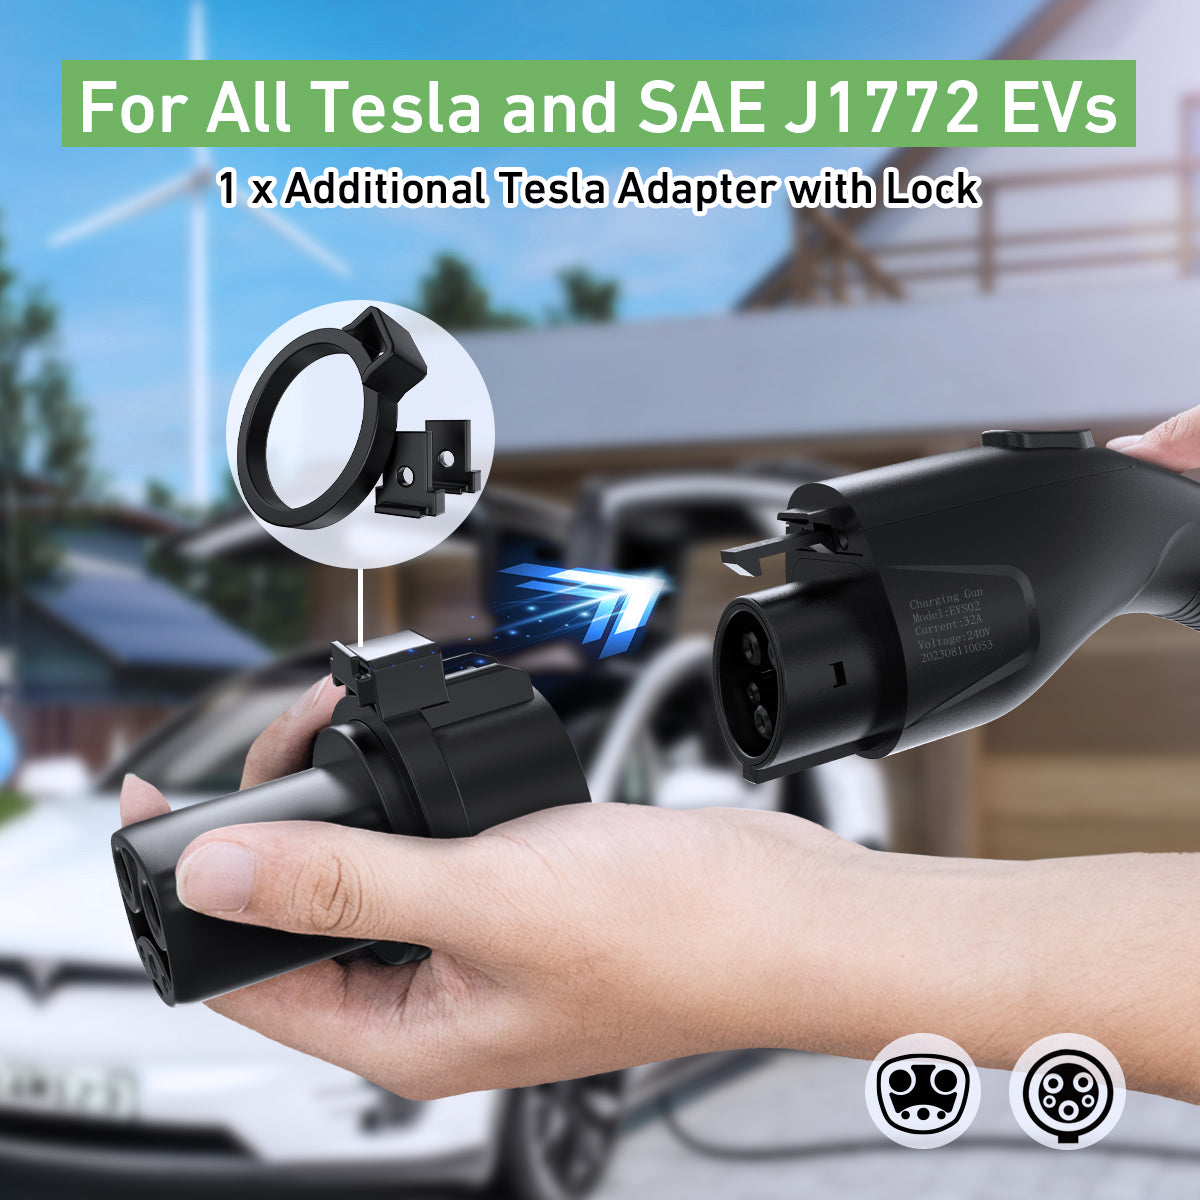 32A 240V Level 1+2 Portable EV Charger for SAE J1772 & TESLA